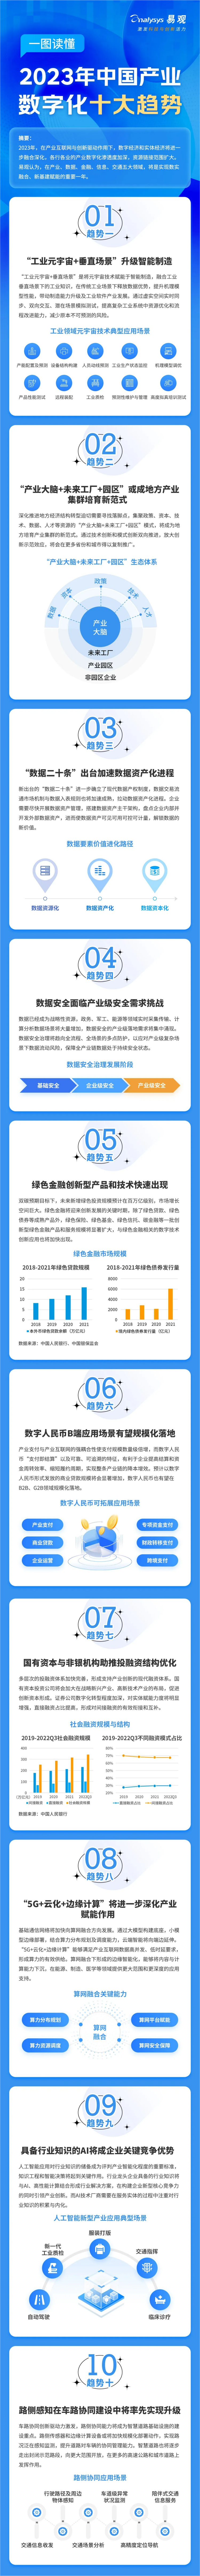 2023年中国产业数字化十大趋势